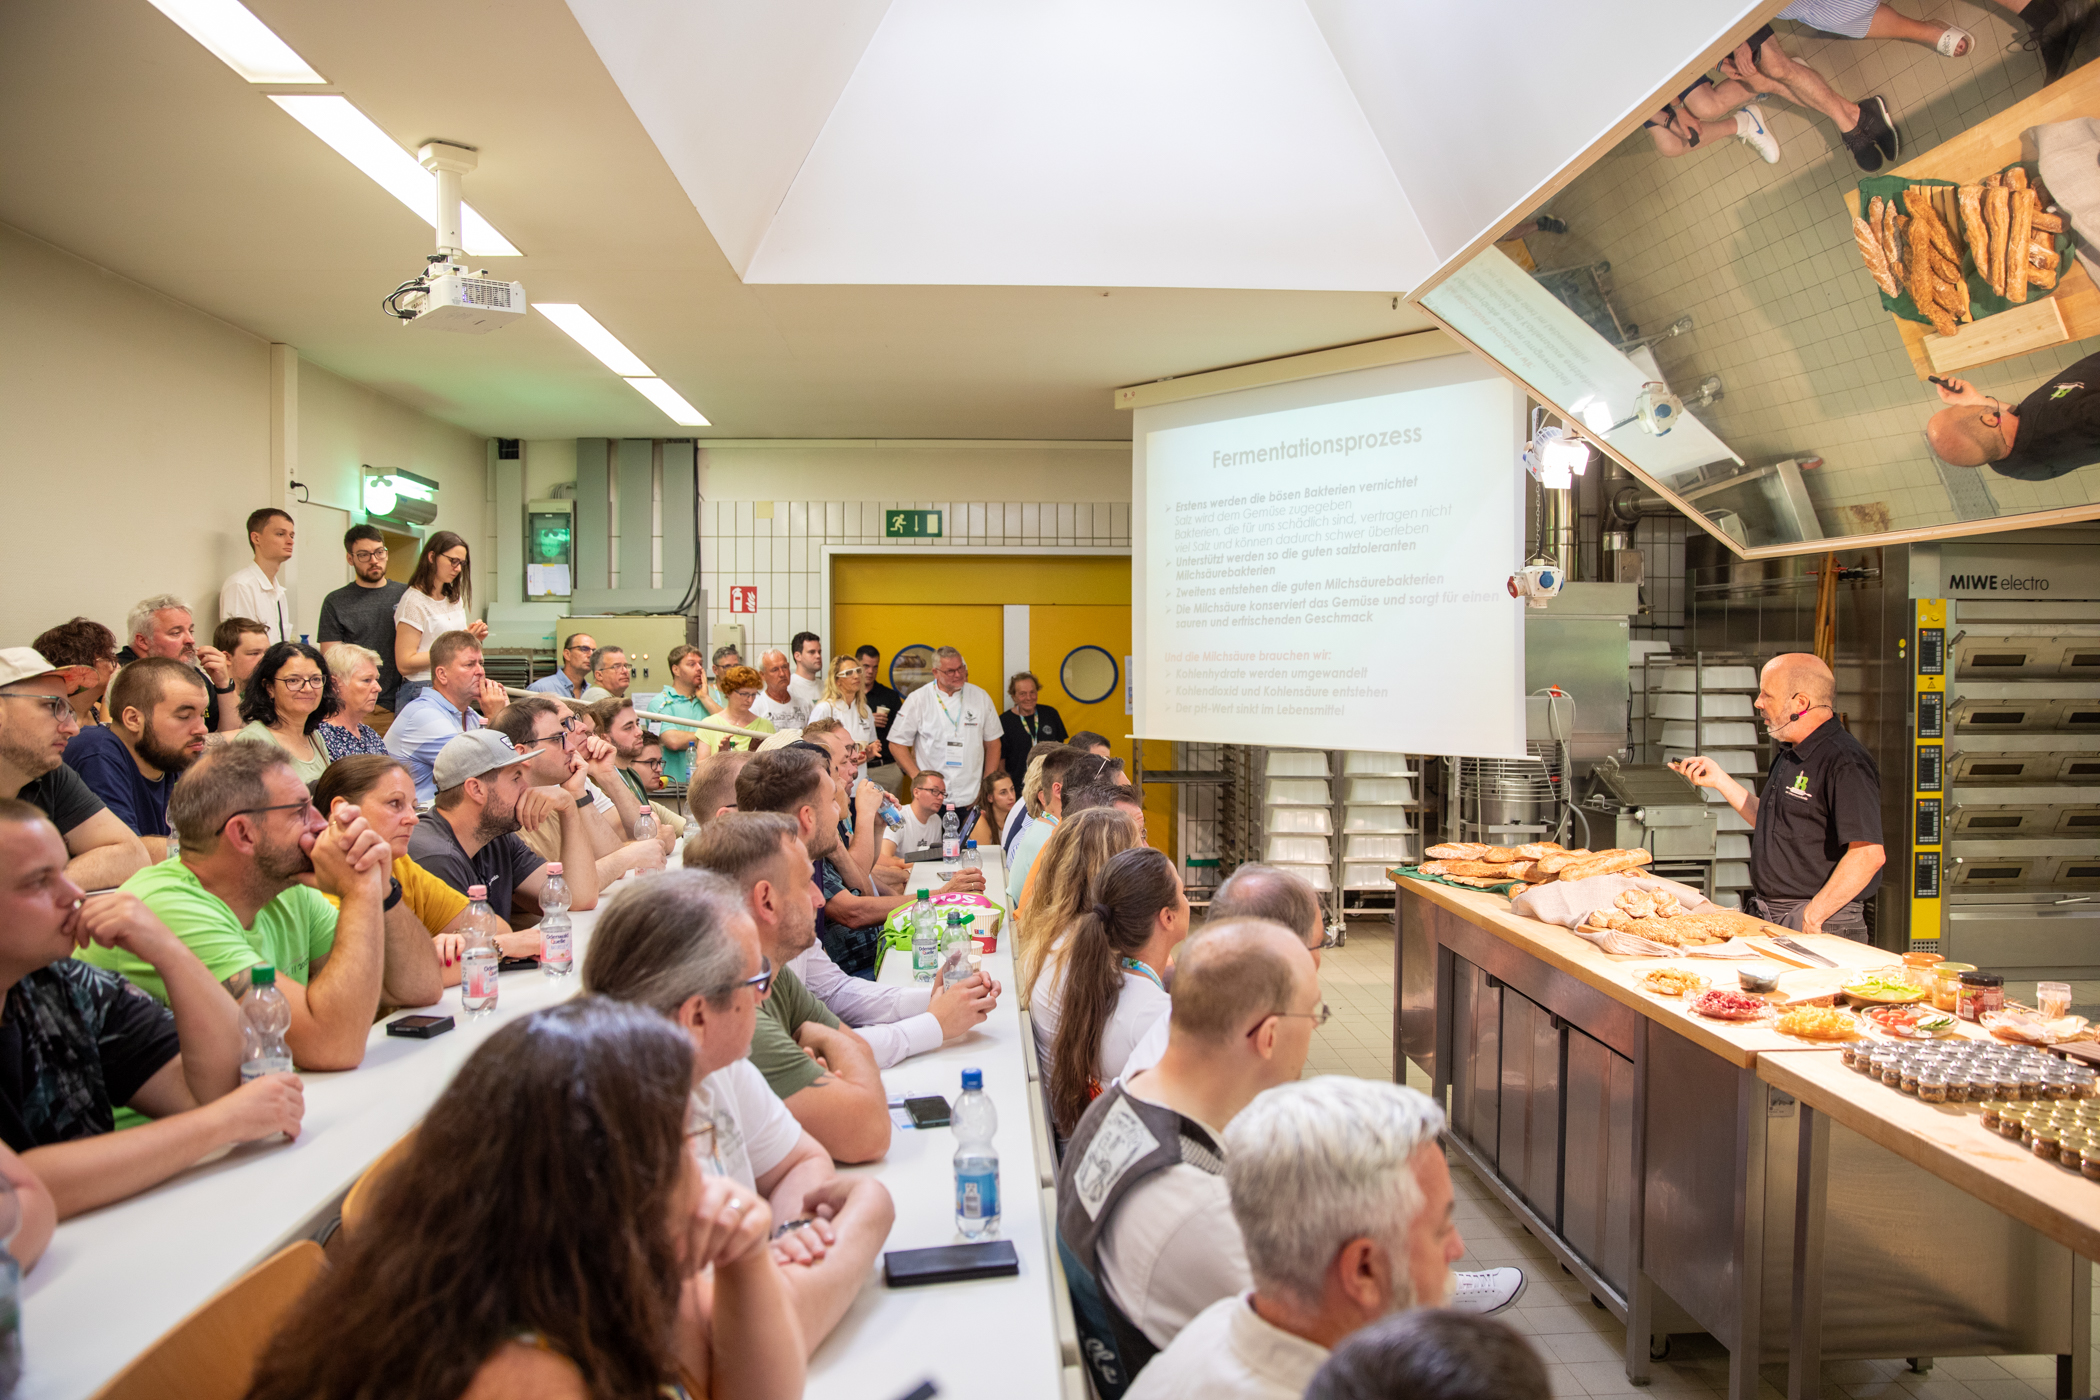 Bread-Summercamp in Weinheim: Heißes Wochenende mit Bildung und Party 